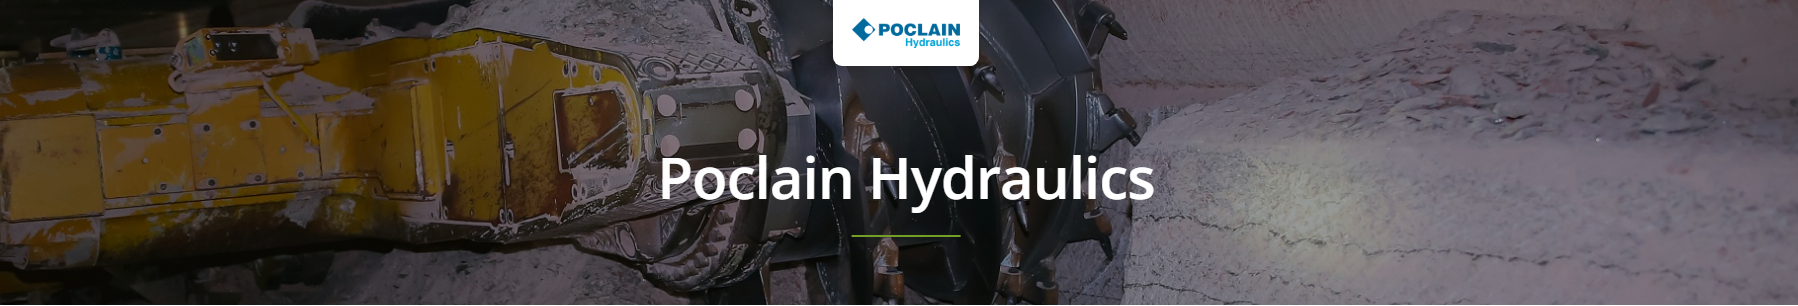 Poclain Hydraulics Pumps